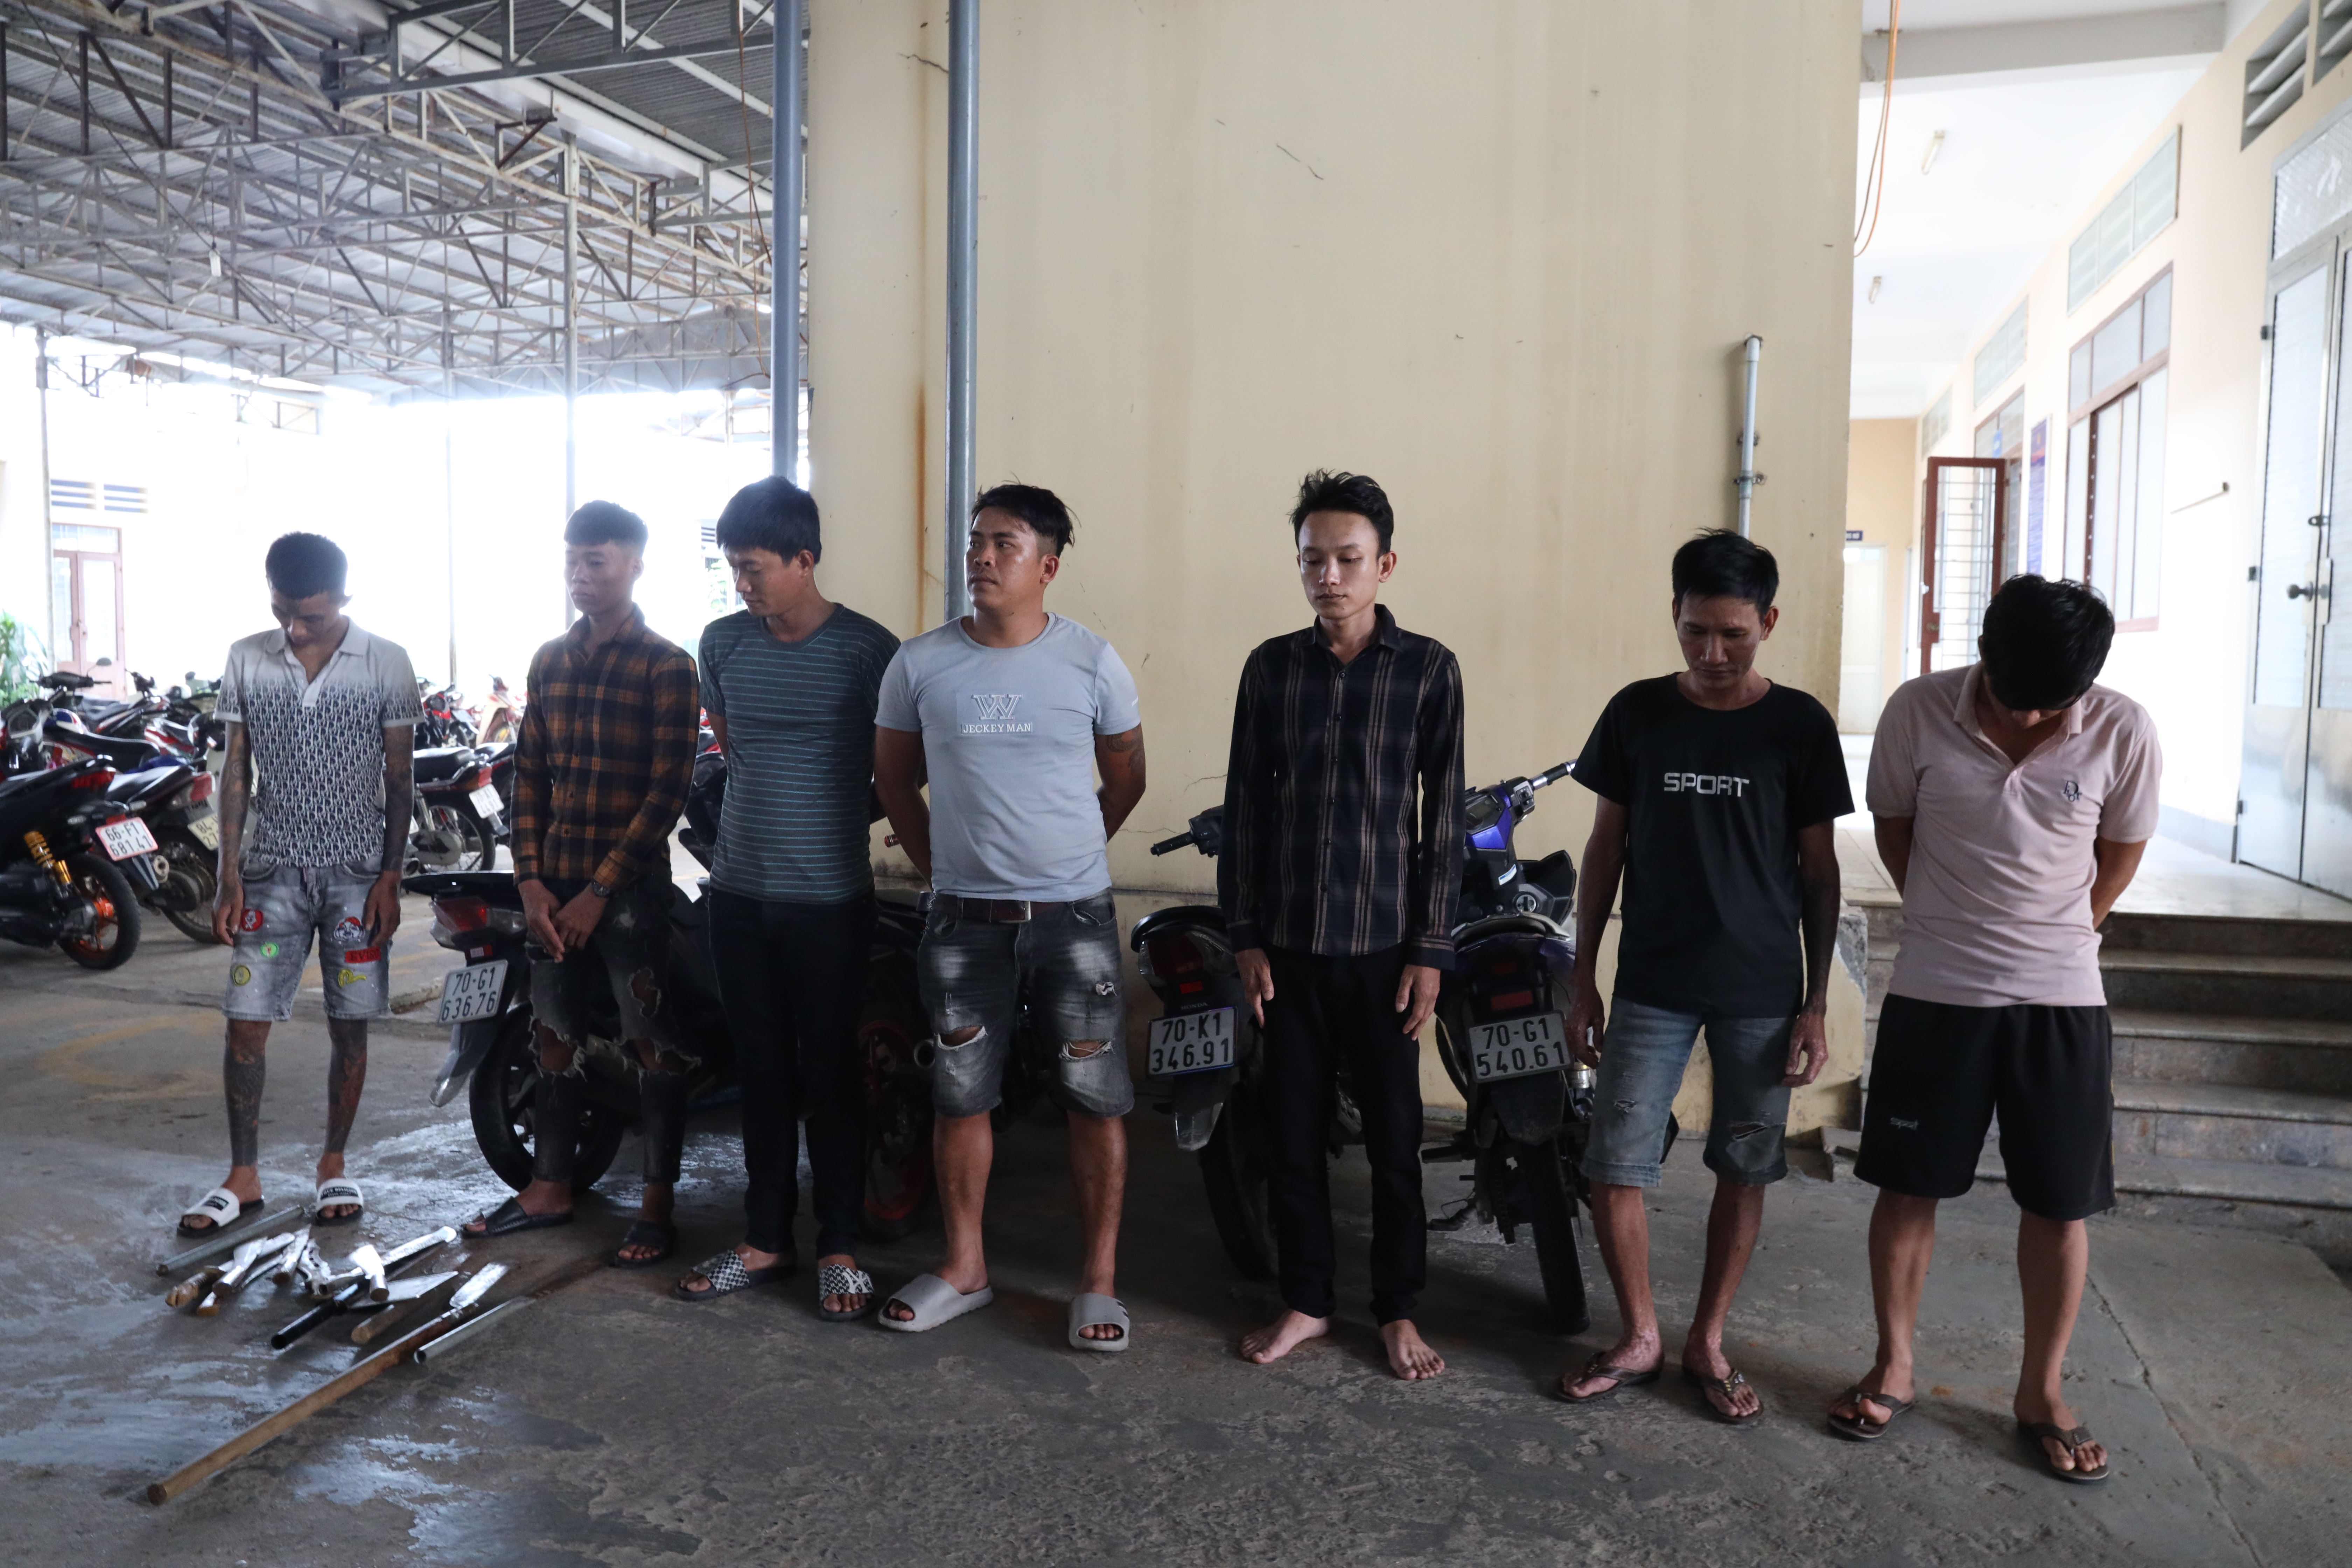 Bốn tên cướp, tấu mã bị bắt giữ vì tội cưỡng đoạt tài sản ở Tây Ninh. Tới xem để biết thêm chi tiết về vụ bắt giữ này và những nỗ lực của cảnh sát trong việc bảo vệ sự an toàn và bình yên cho cộng đồng.